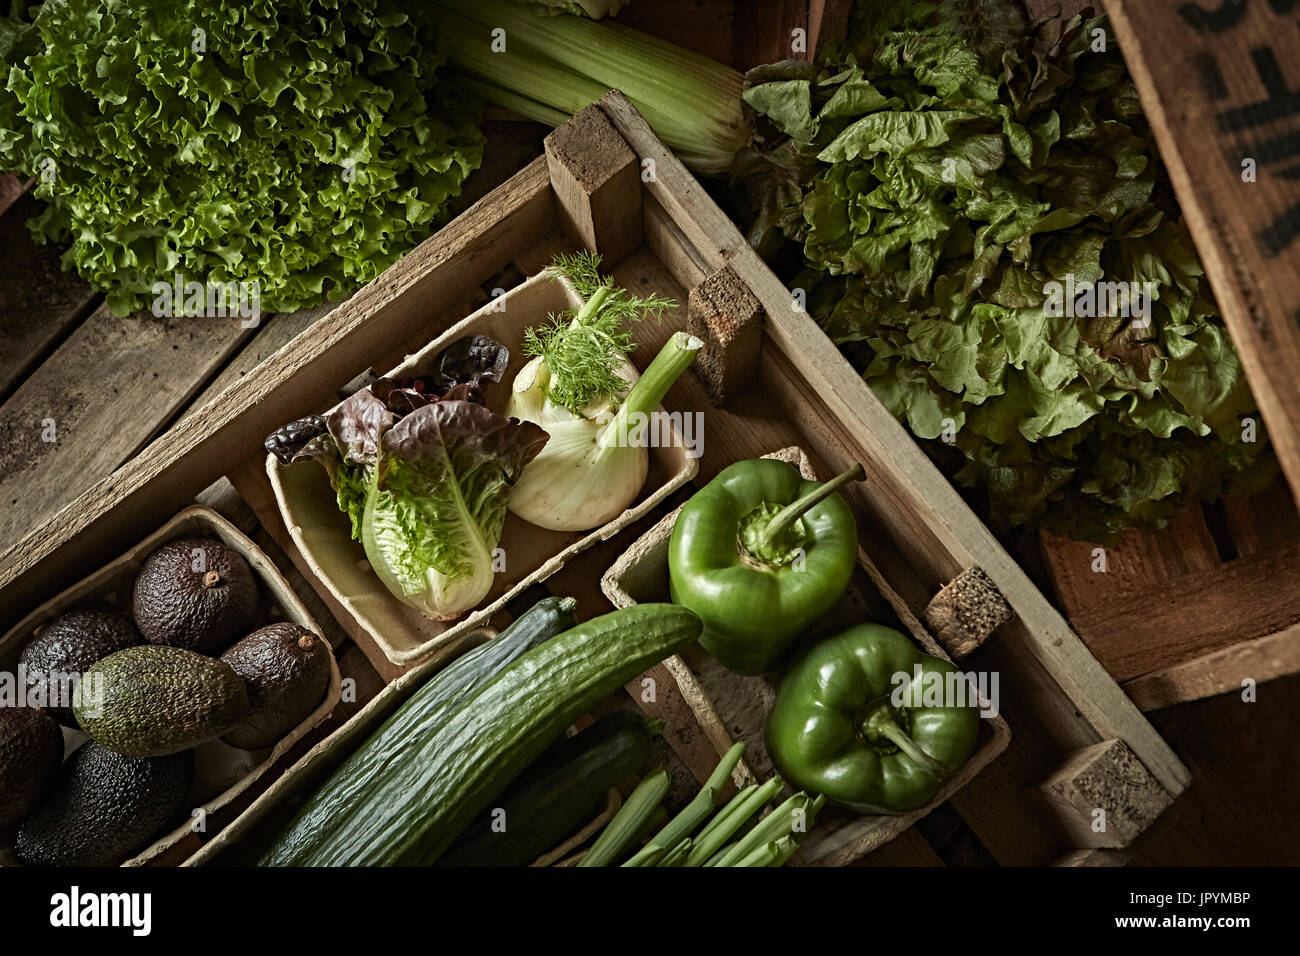 La vie toujours frais, bio, vert, légumes sains dans divers caisse bois Banque D'Images